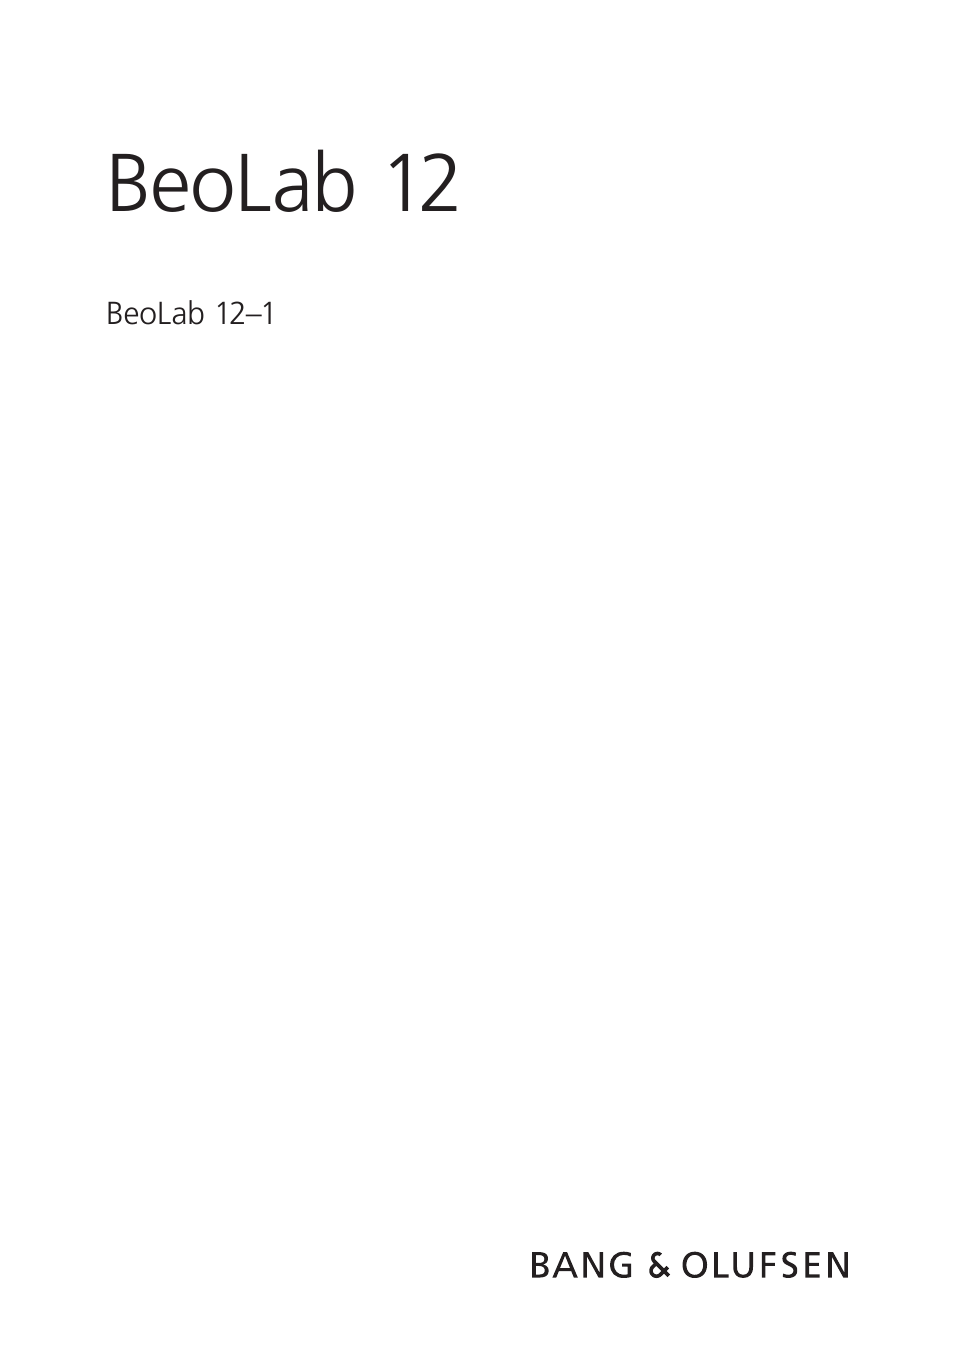 Инструкция по эксплуатации Bang & Olufsen BeoLab 12-1 - User Guide | 8 страниц